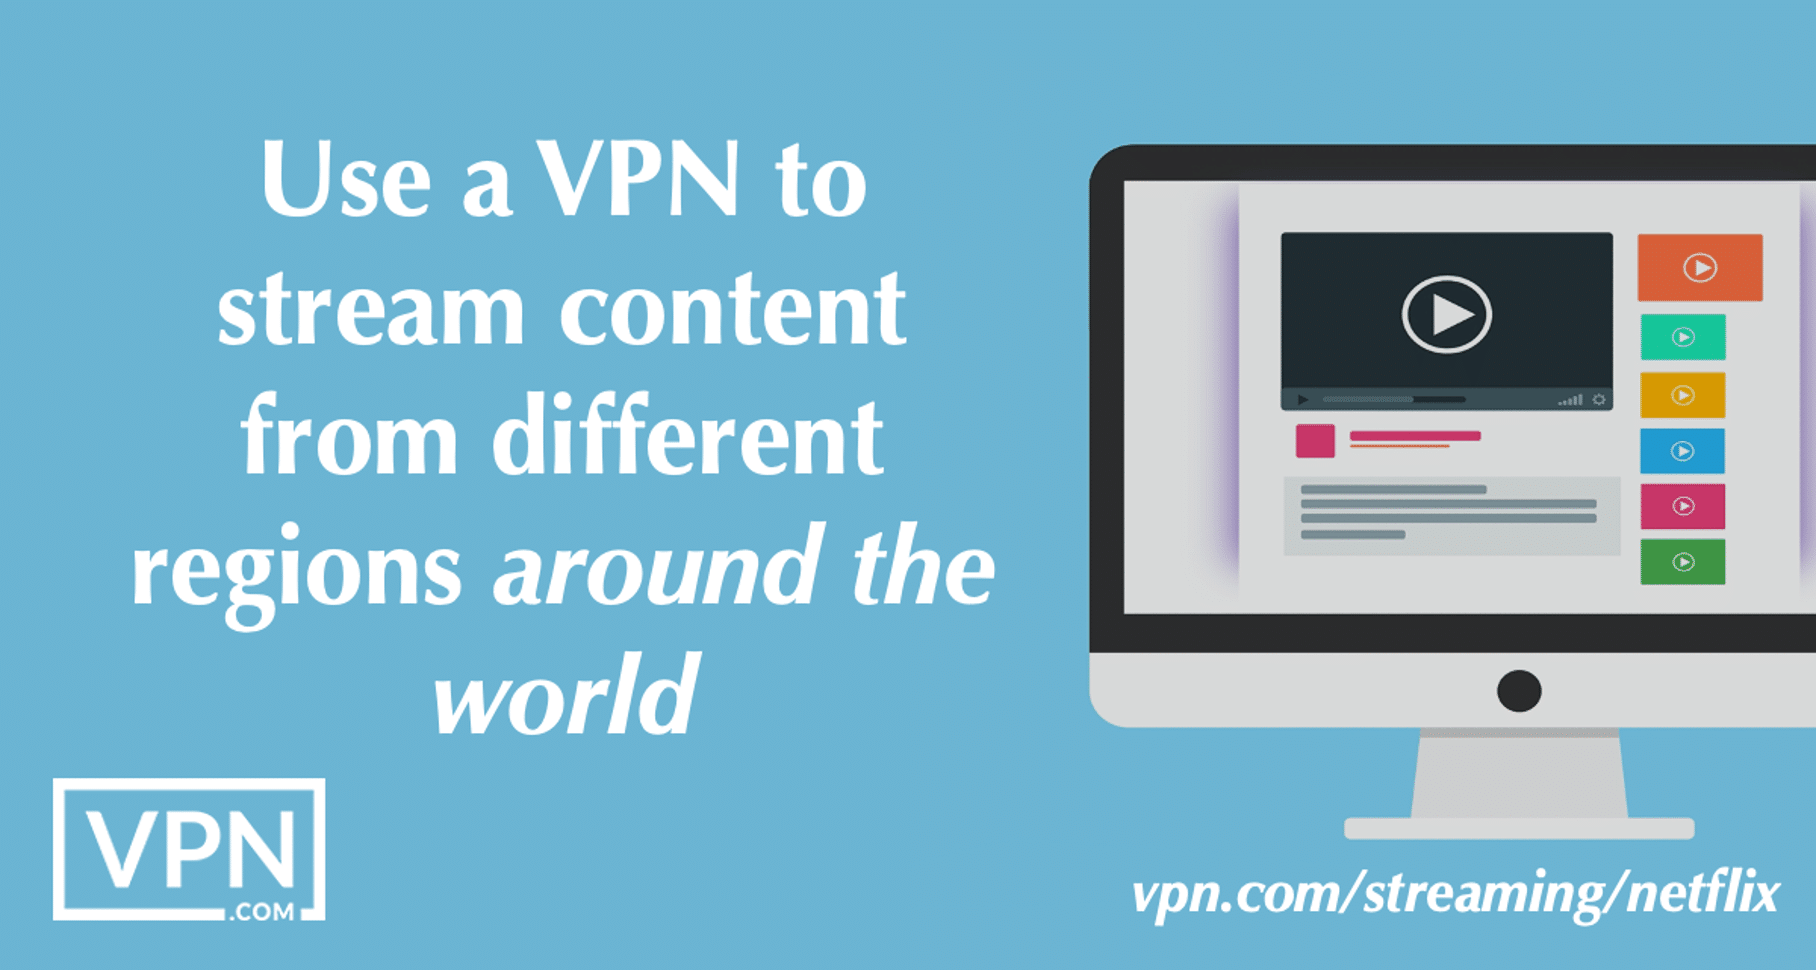 Gebruik een VPN om content te streamen vanuit verschillende regio's in de wereld.